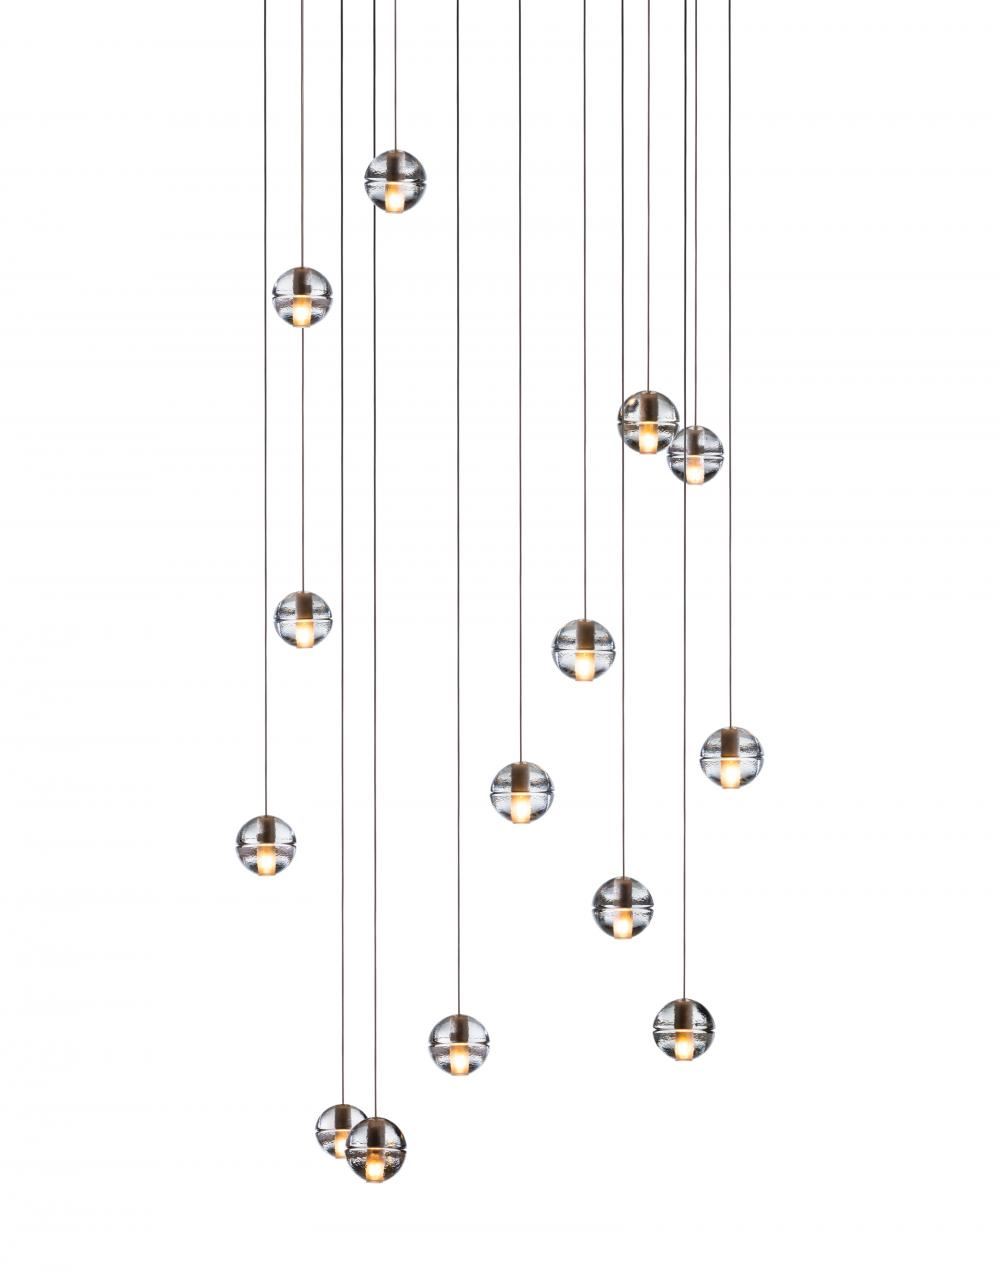 Bocci Series 14 Pendant 11 36 Pieces 11 Pendant Square Canopy 10w Xenon Clear Designer Pendant Lighting